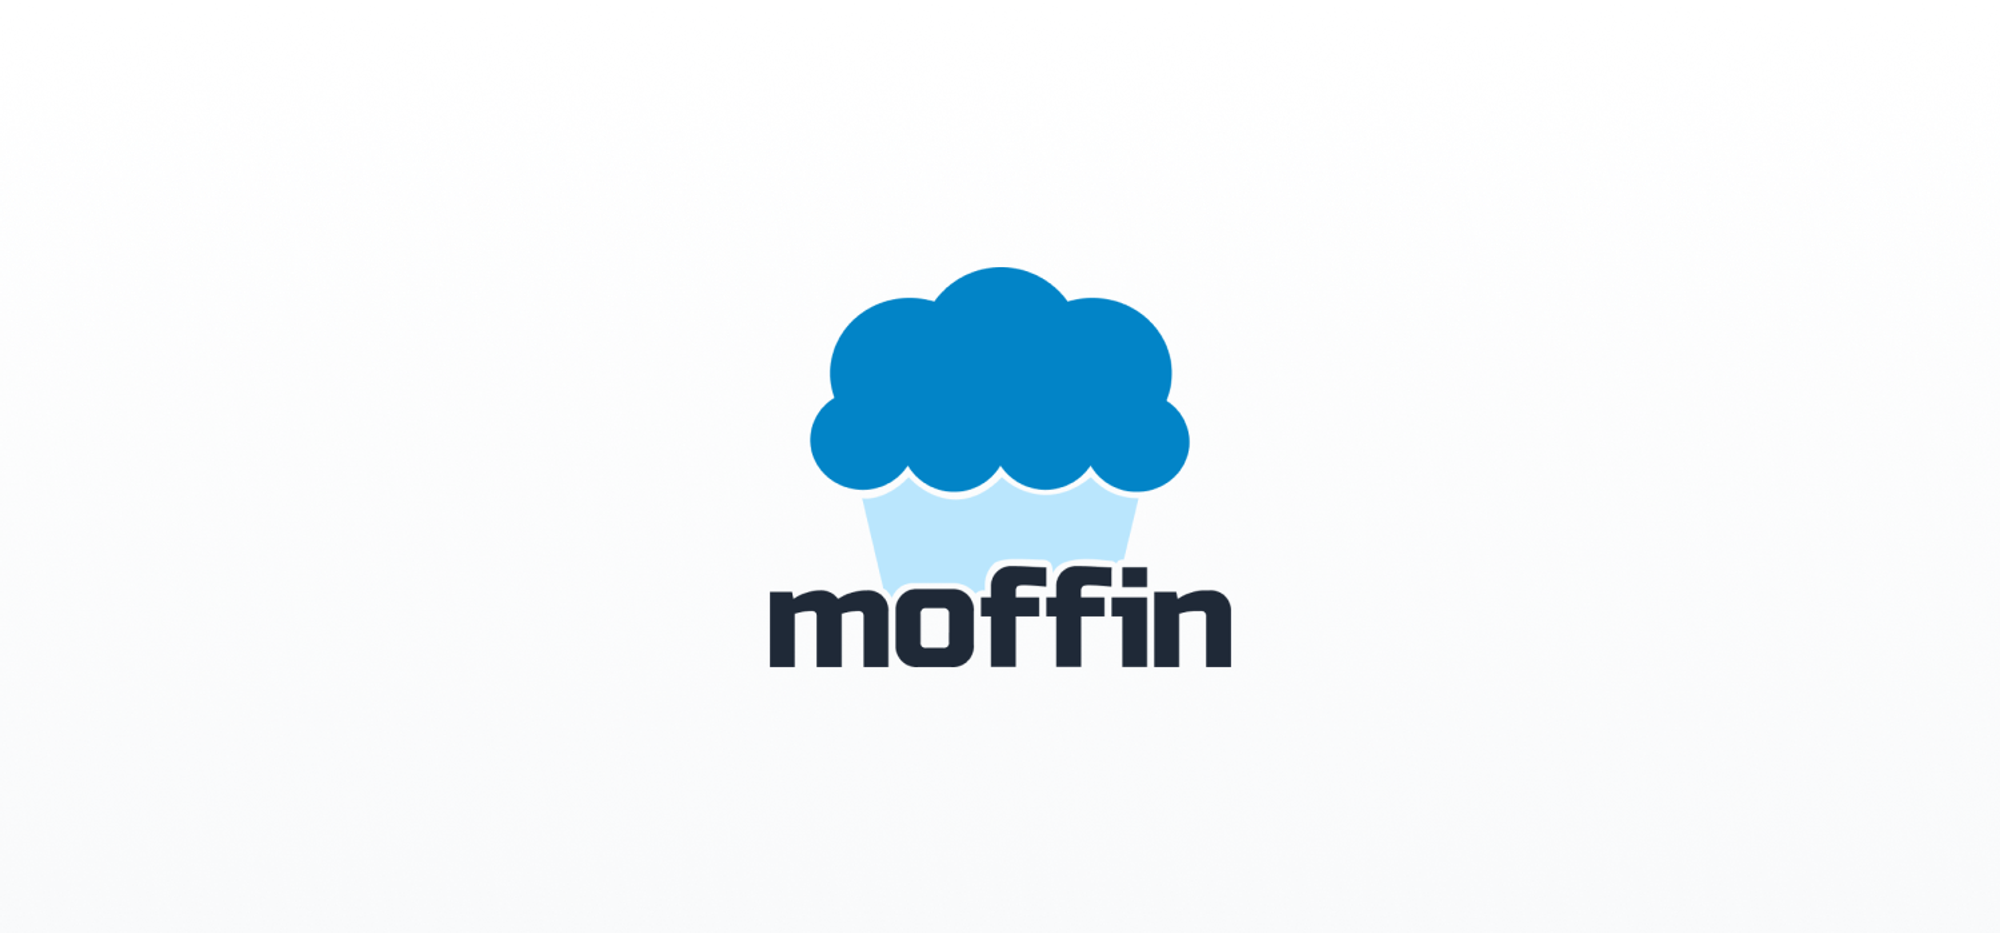 Moffin